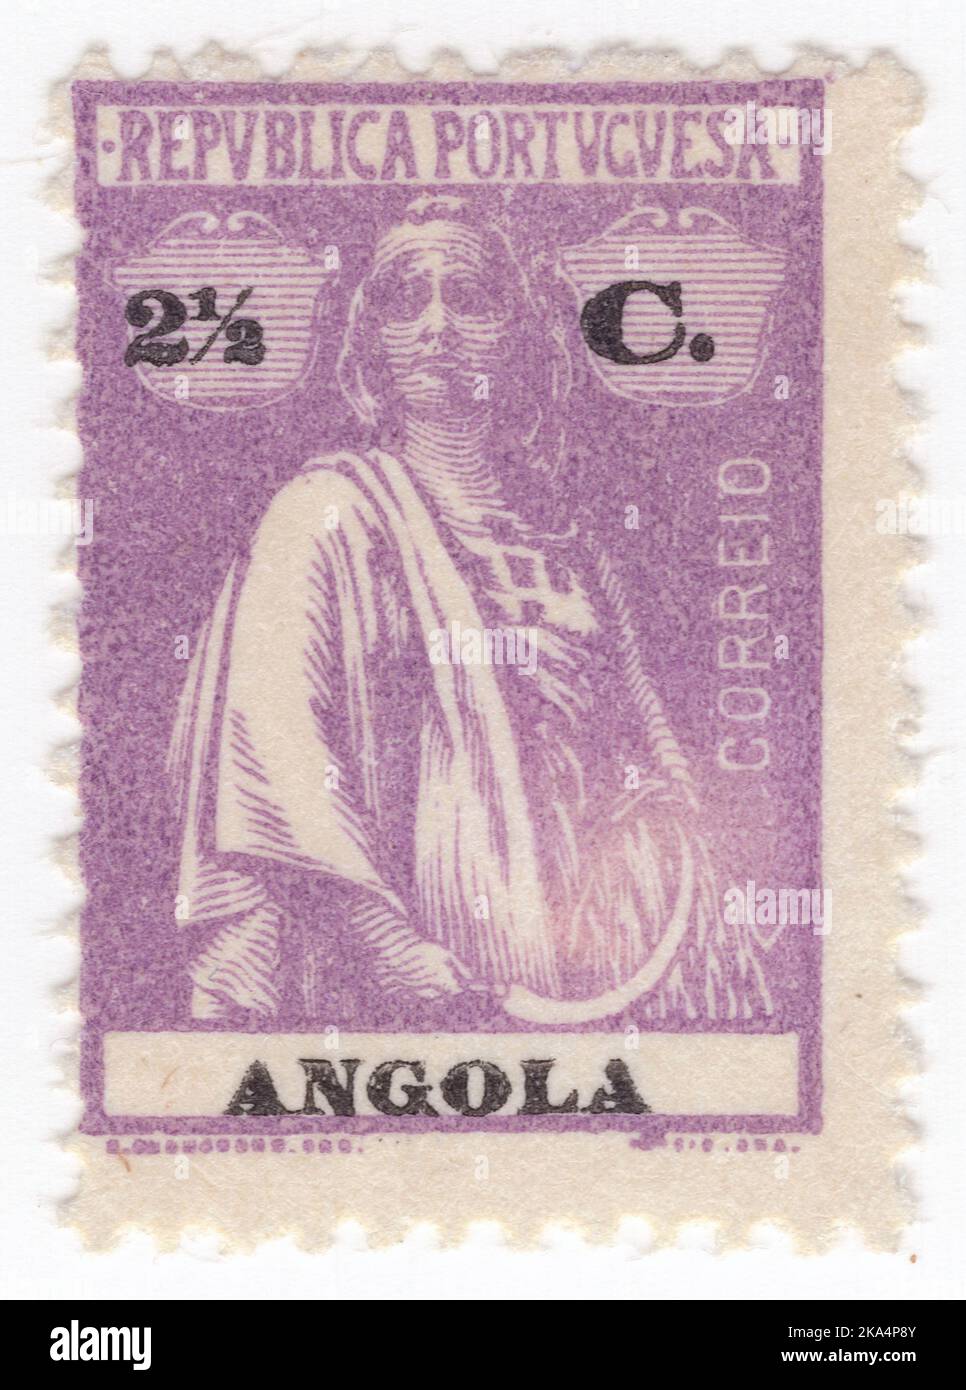 ANGOLA - 1914: Un francobollo viola chiaro di 2½ centavos che mostra Ceres, Dea dell'agricoltura, della fertilità, dei cereali, del raccolto, maternità, la terra, e coltivò raccolti. Nome e valore in nero. Chiave Ceres con iscrizione Angola Foto Stock